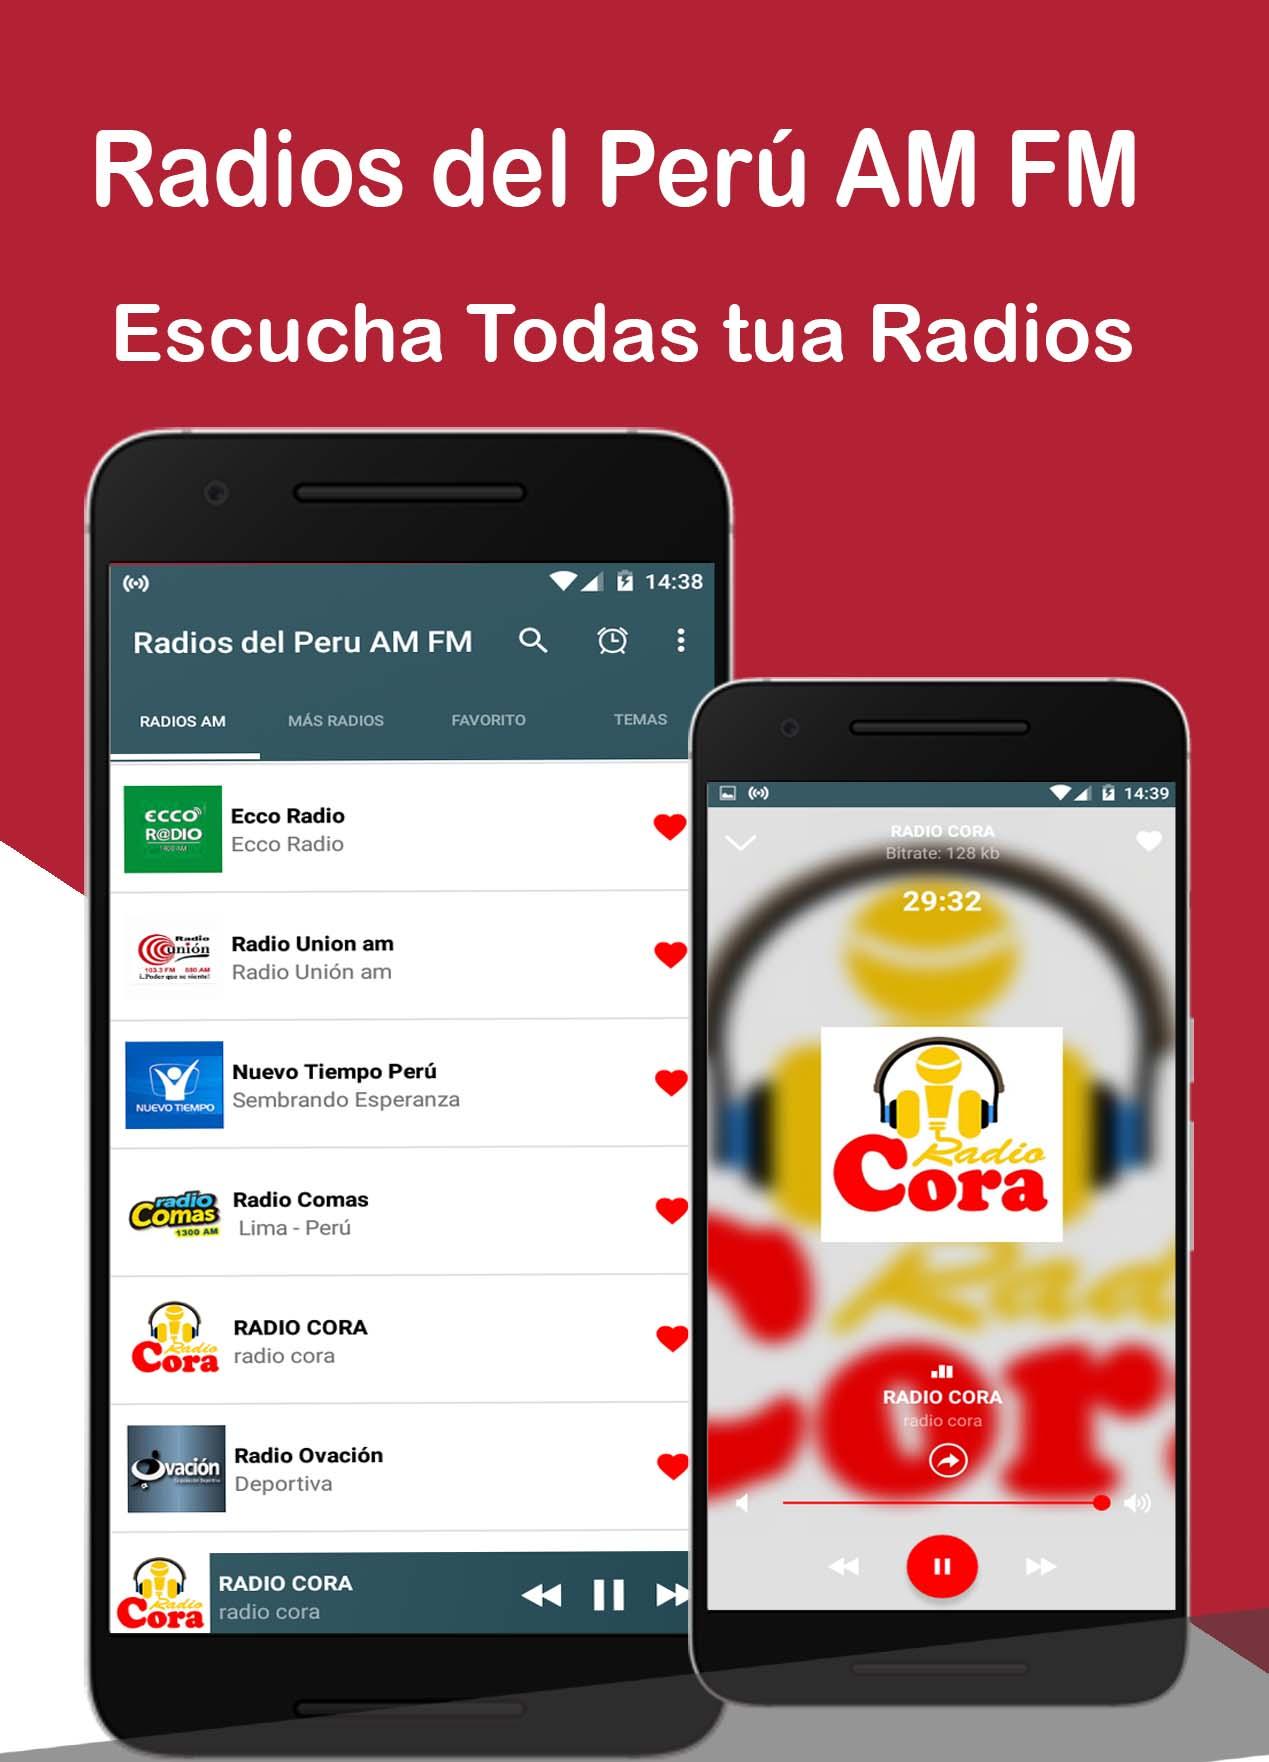 Radios del Peru - Radios Peruanas en Vivo APK 1.0.18 for Android – Download  Radios del Peru - Radios Peruanas en Vivo XAPK (APK Bundle) Latest Version  from APKFab.com